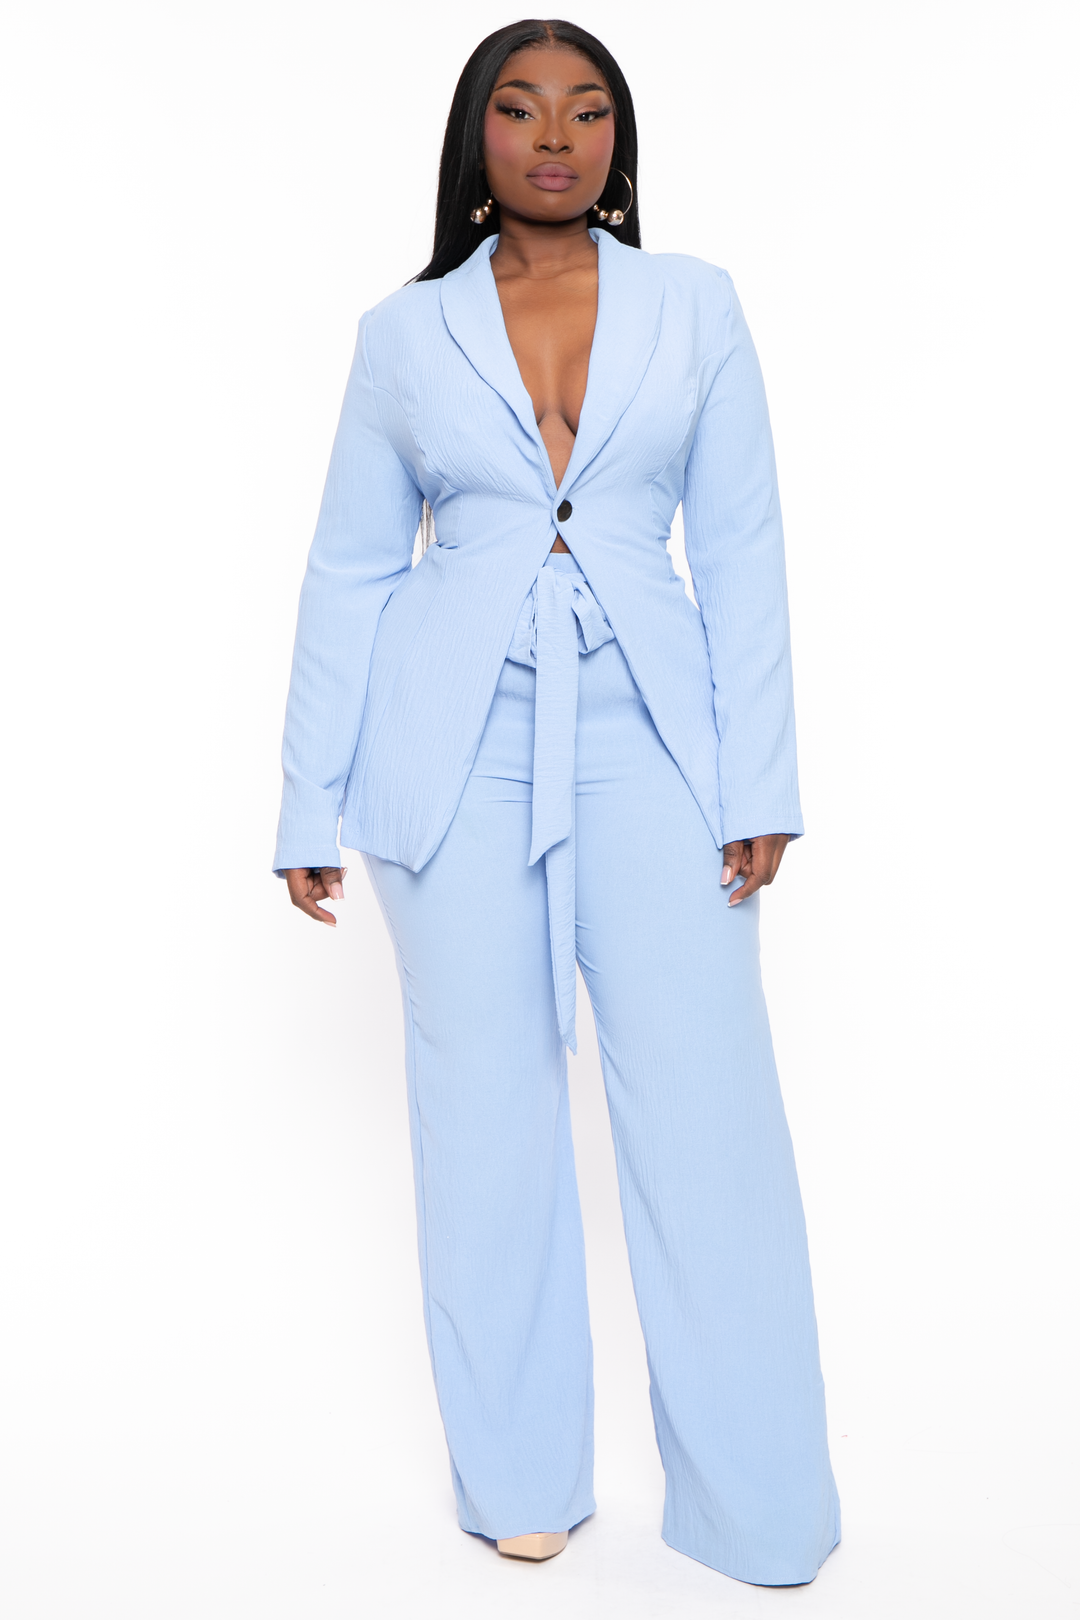 Plus Size HBIC Pant Suit - Baby Blue